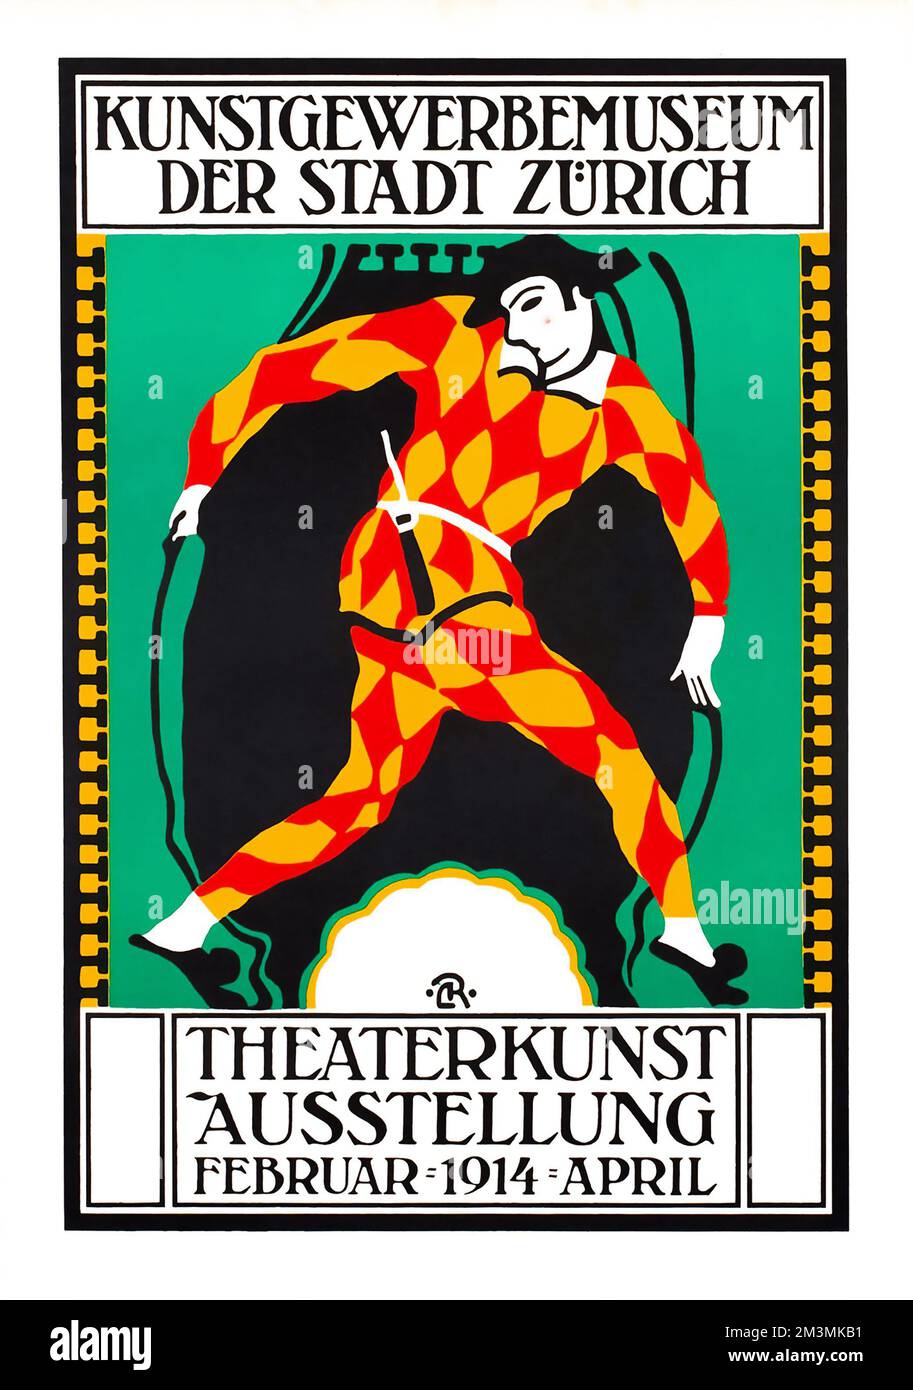 Theatre poster - Carl Roesch - Theaterkunst Austellung - Zurich - Theater Exhibition Harlequin Poster, Februar 1914 - Schweiz, Suisse, Switzerland Stock Photo